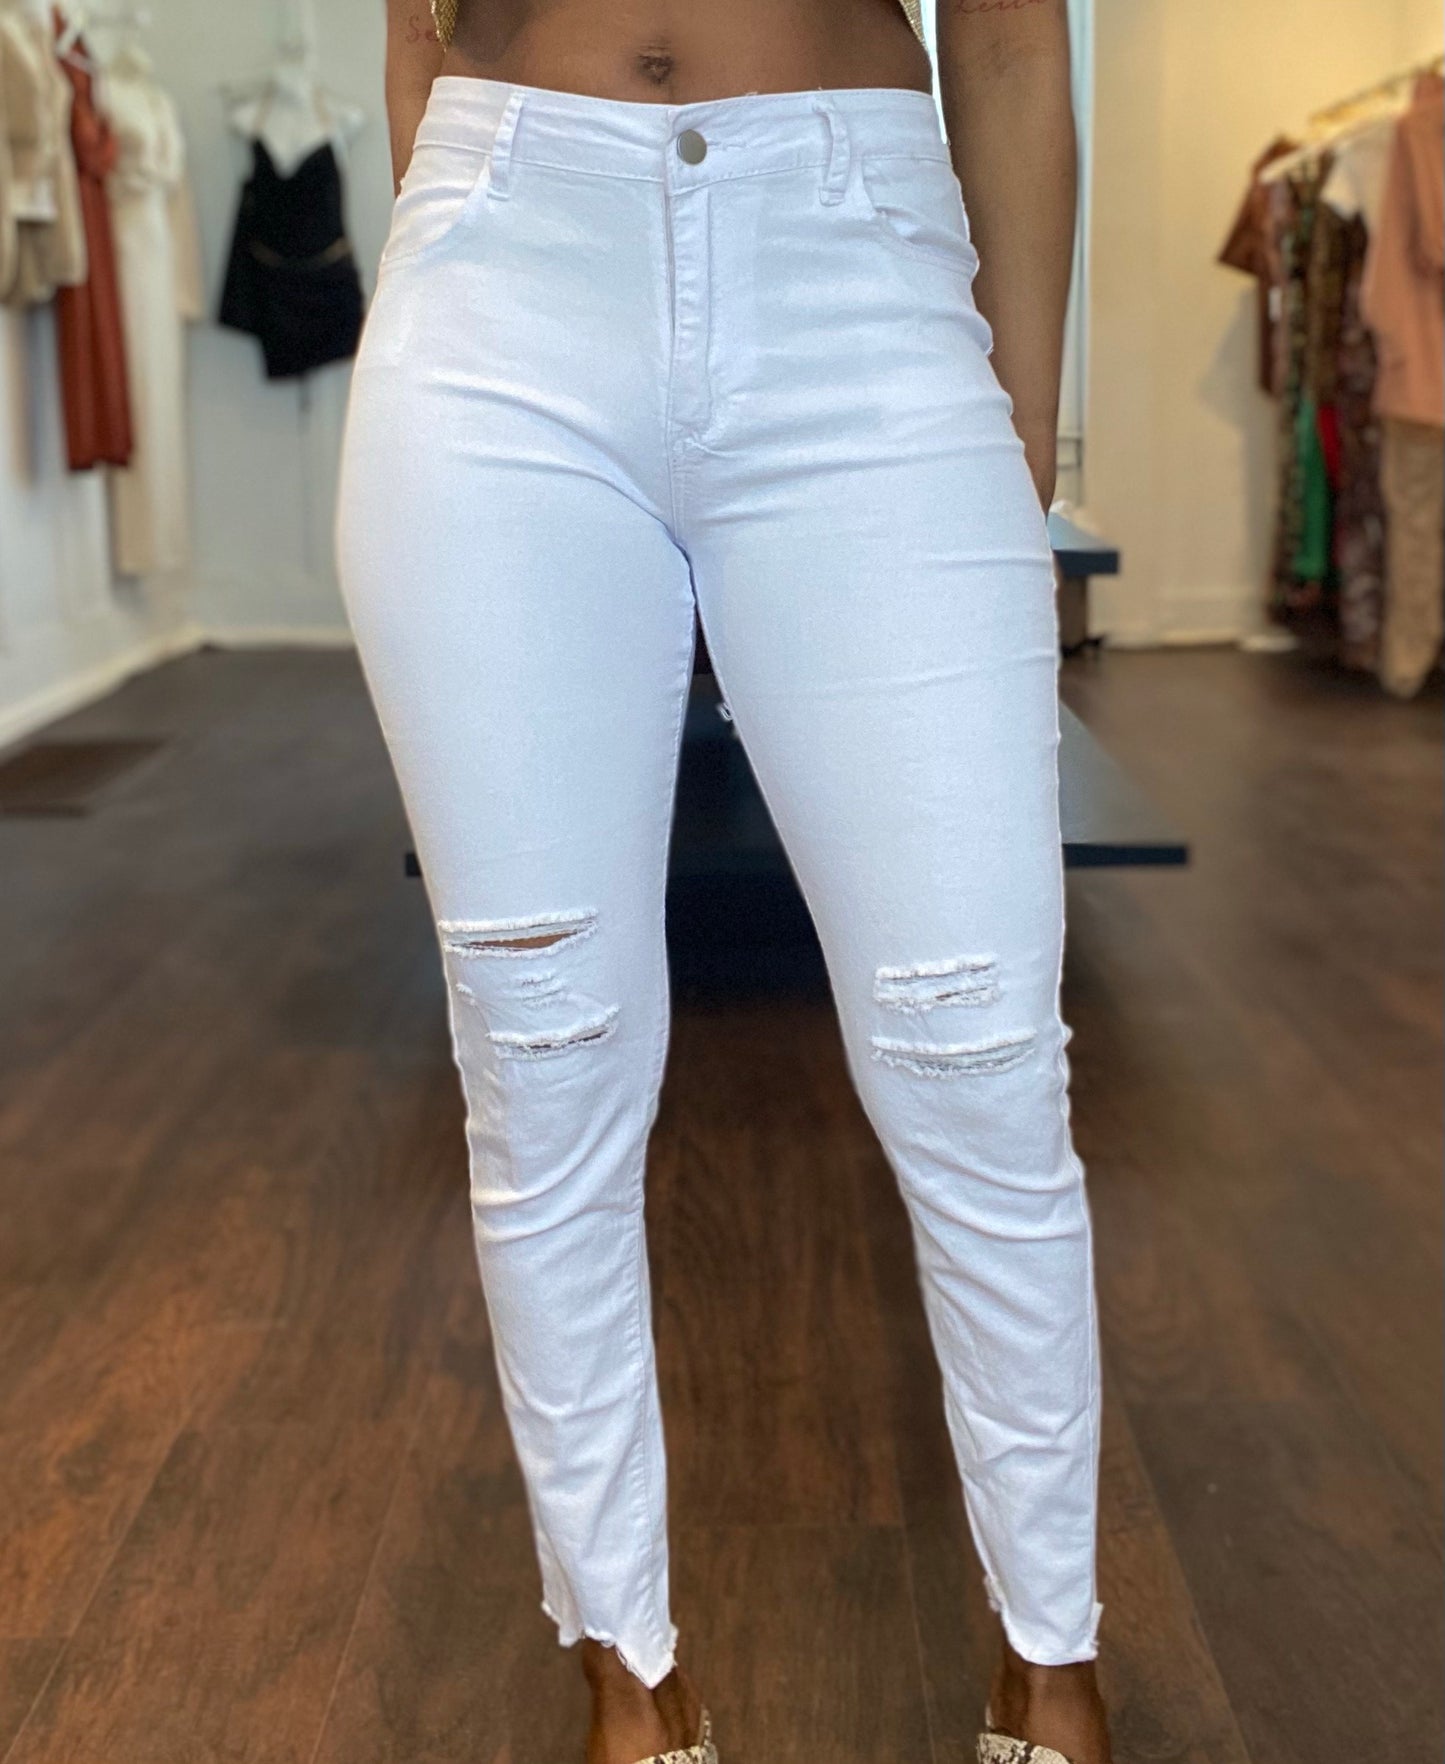 Savannah Waist Jeans